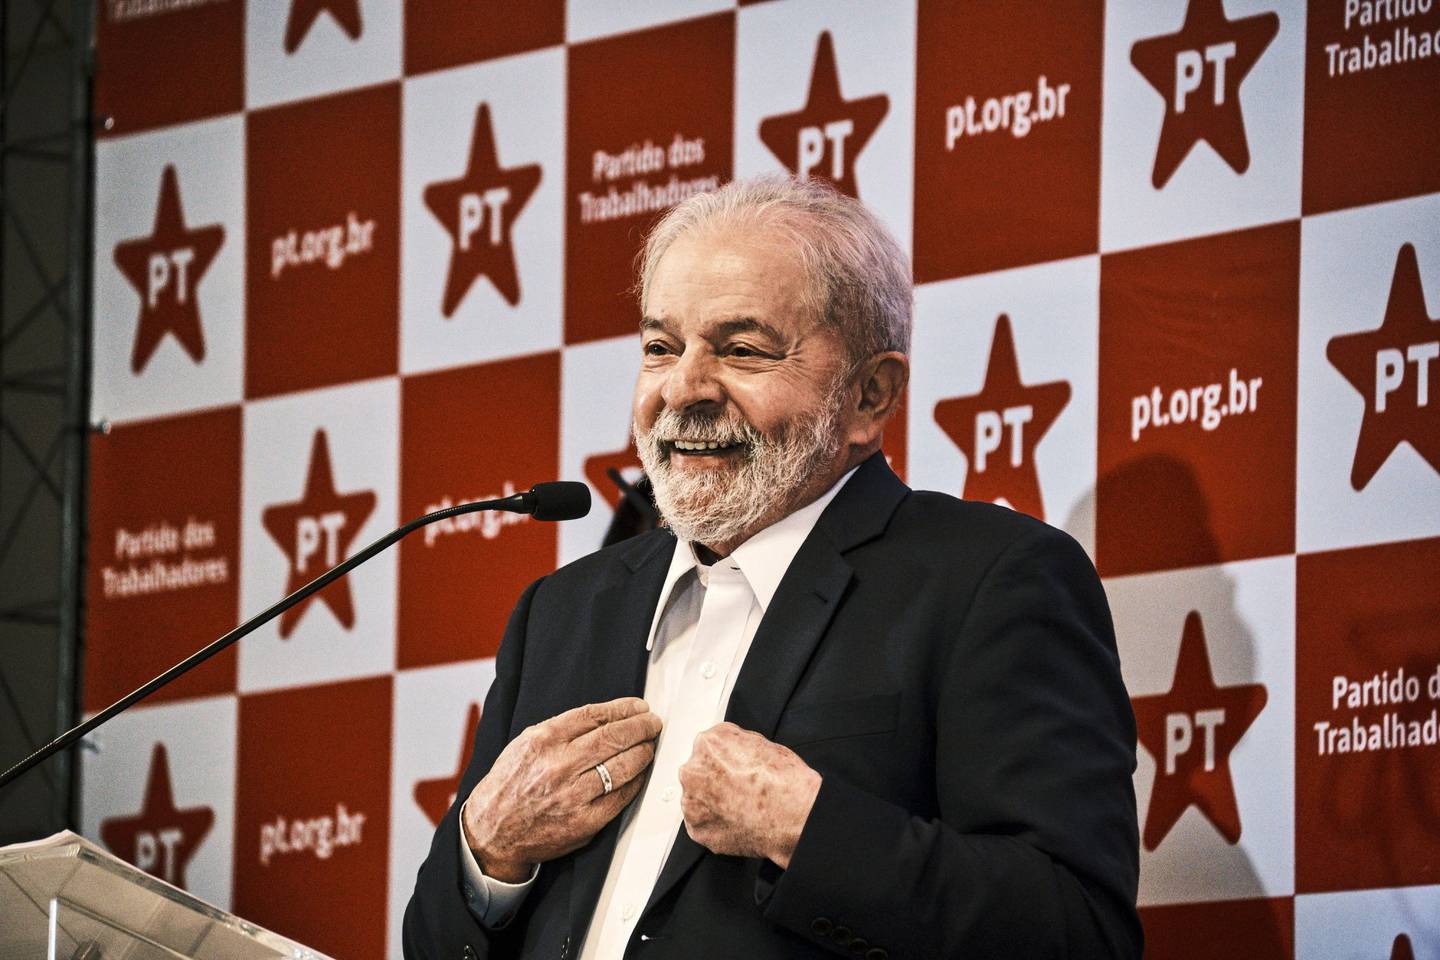 Luiz Inacio Lula da Silva, ex presidente de Brasil, habla durante una conferencia de prensa en Brasilia, Brasil, el viernes 8 de octubre de 2021. Lula dijo que todavía no está discutiendo la composición política para las elecciones de 2022 y que aún no ha decidido los nombres para ser vicepresidente o ministro de Economía.